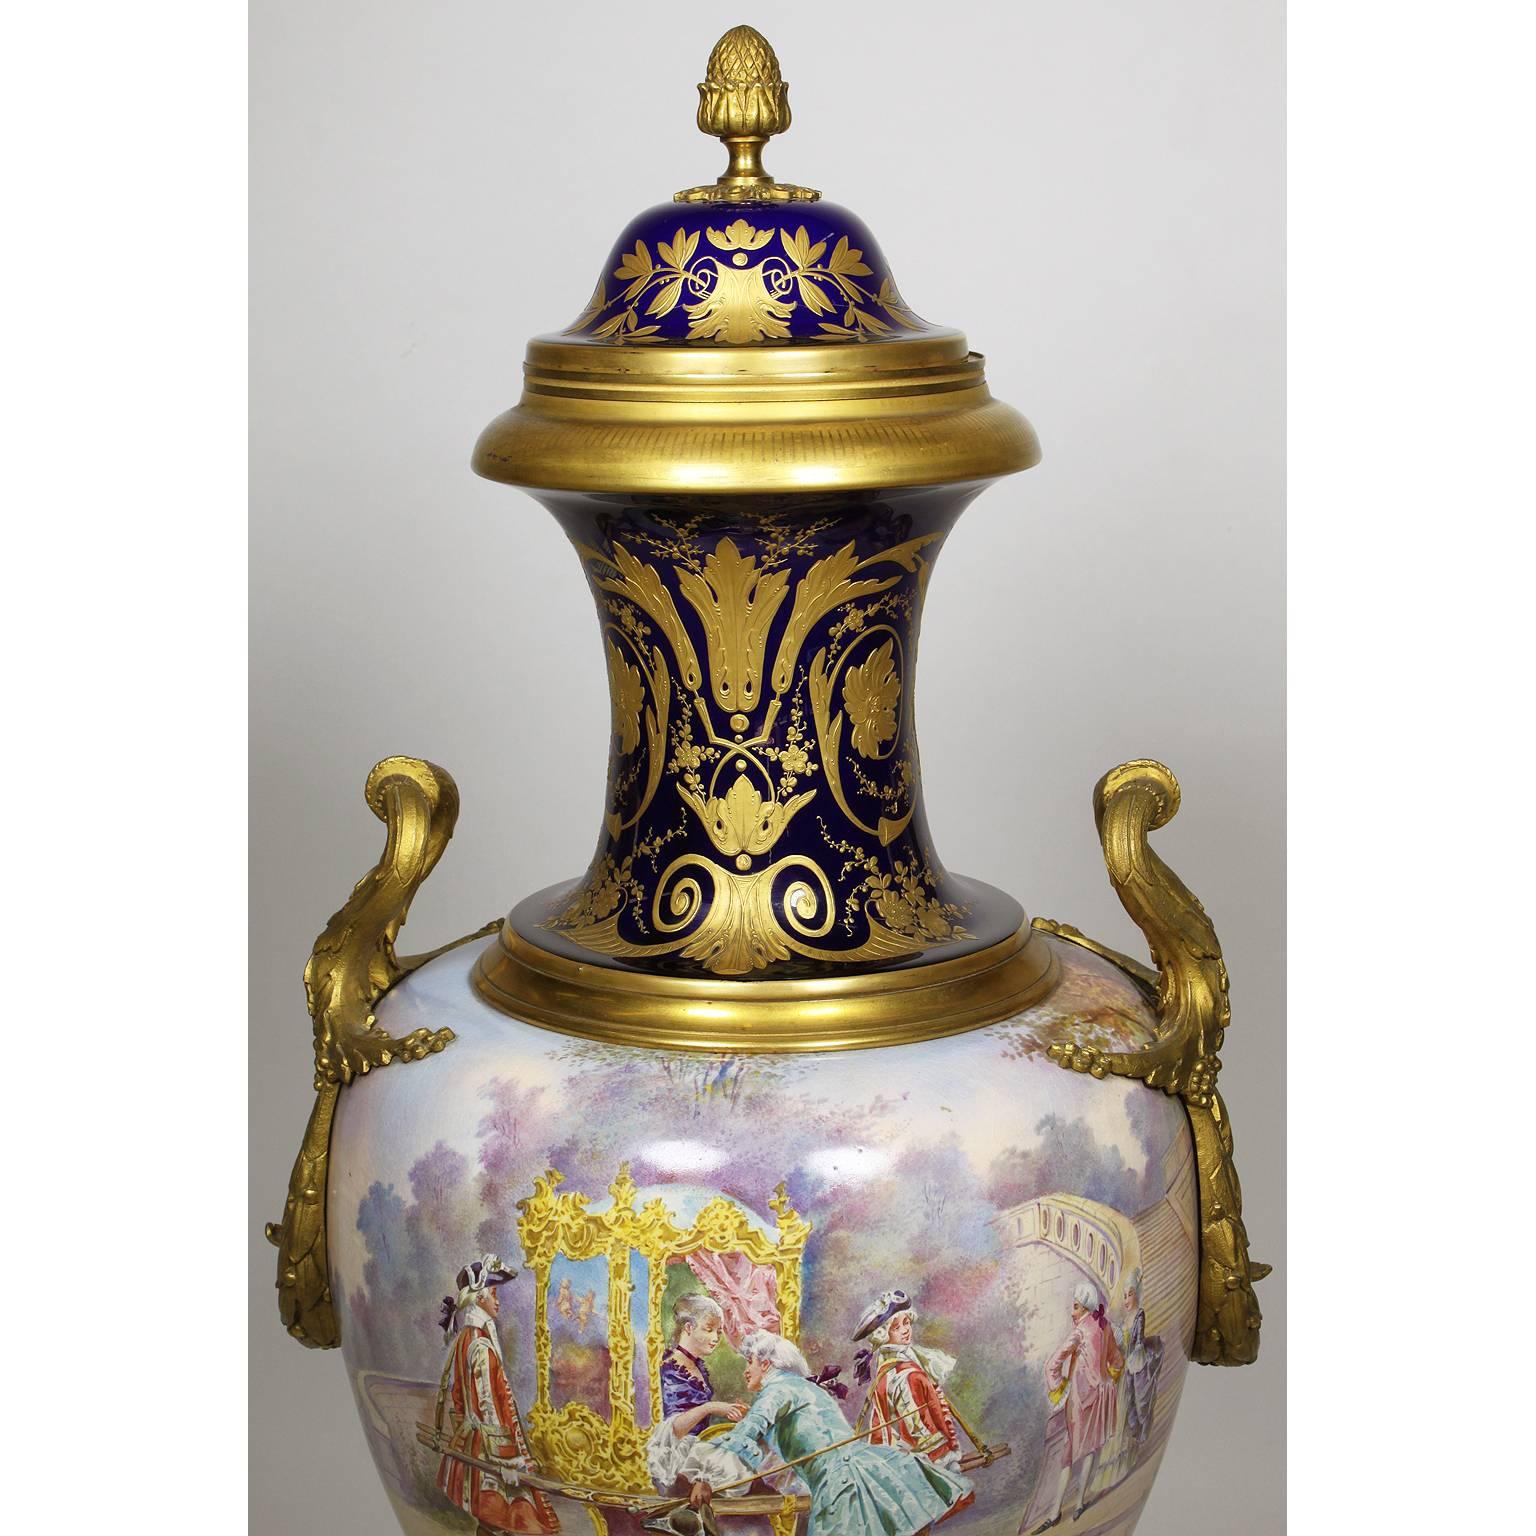 Très belle urne couverte en porcelaine et bronze doré de style Napoléon III du XIXe siècle. L'urne peinte sur 360 degrés est centrée sur une scène du XVIIIe siècle représentant une jeune princesse dans un palanquin avec ses accompagnateurs,